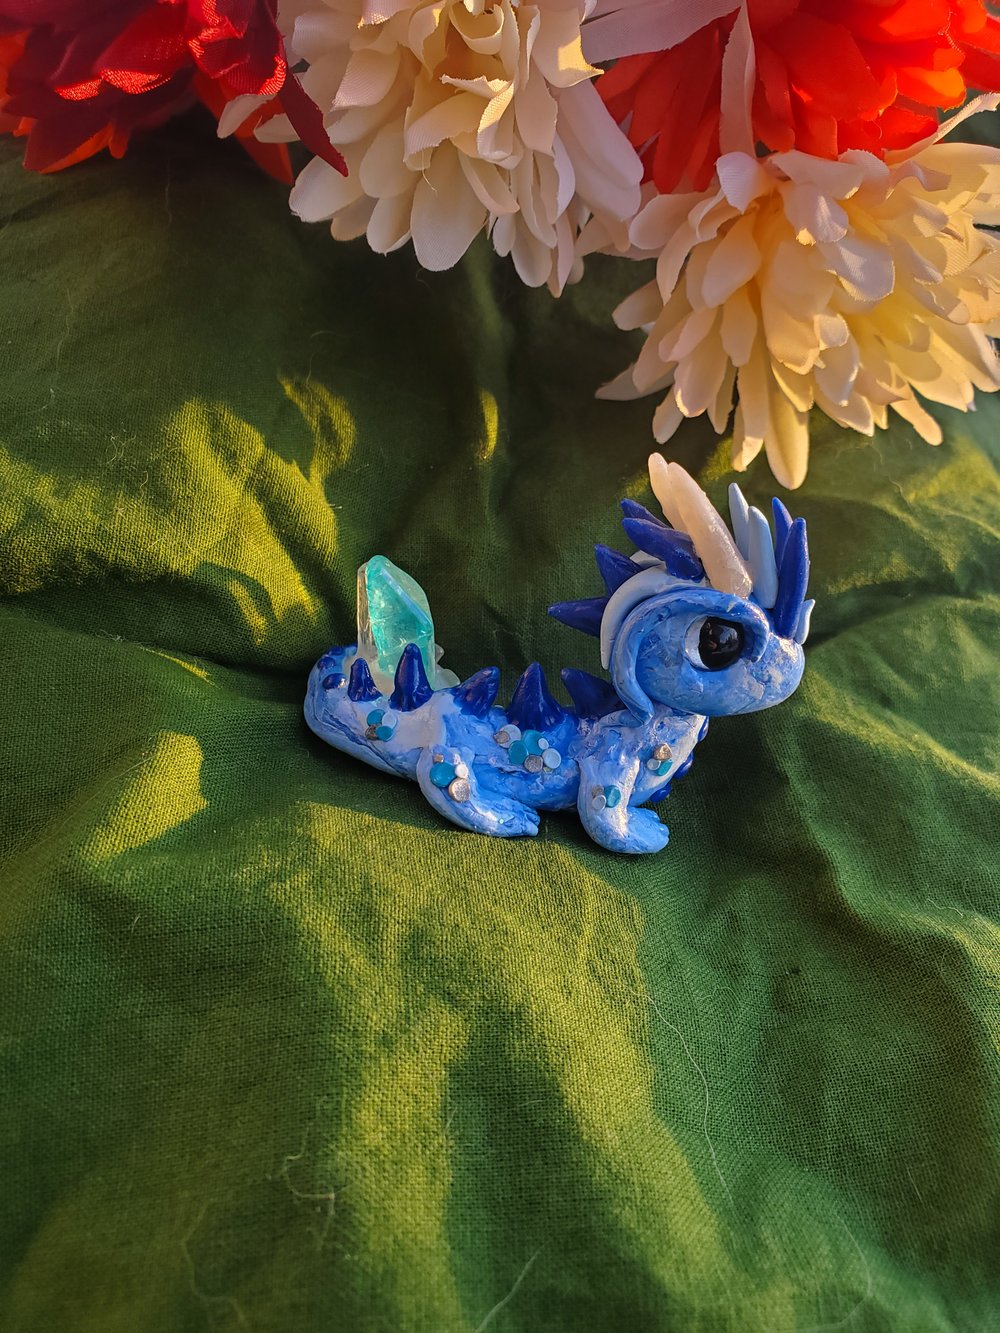 Blue Crystal Dragon